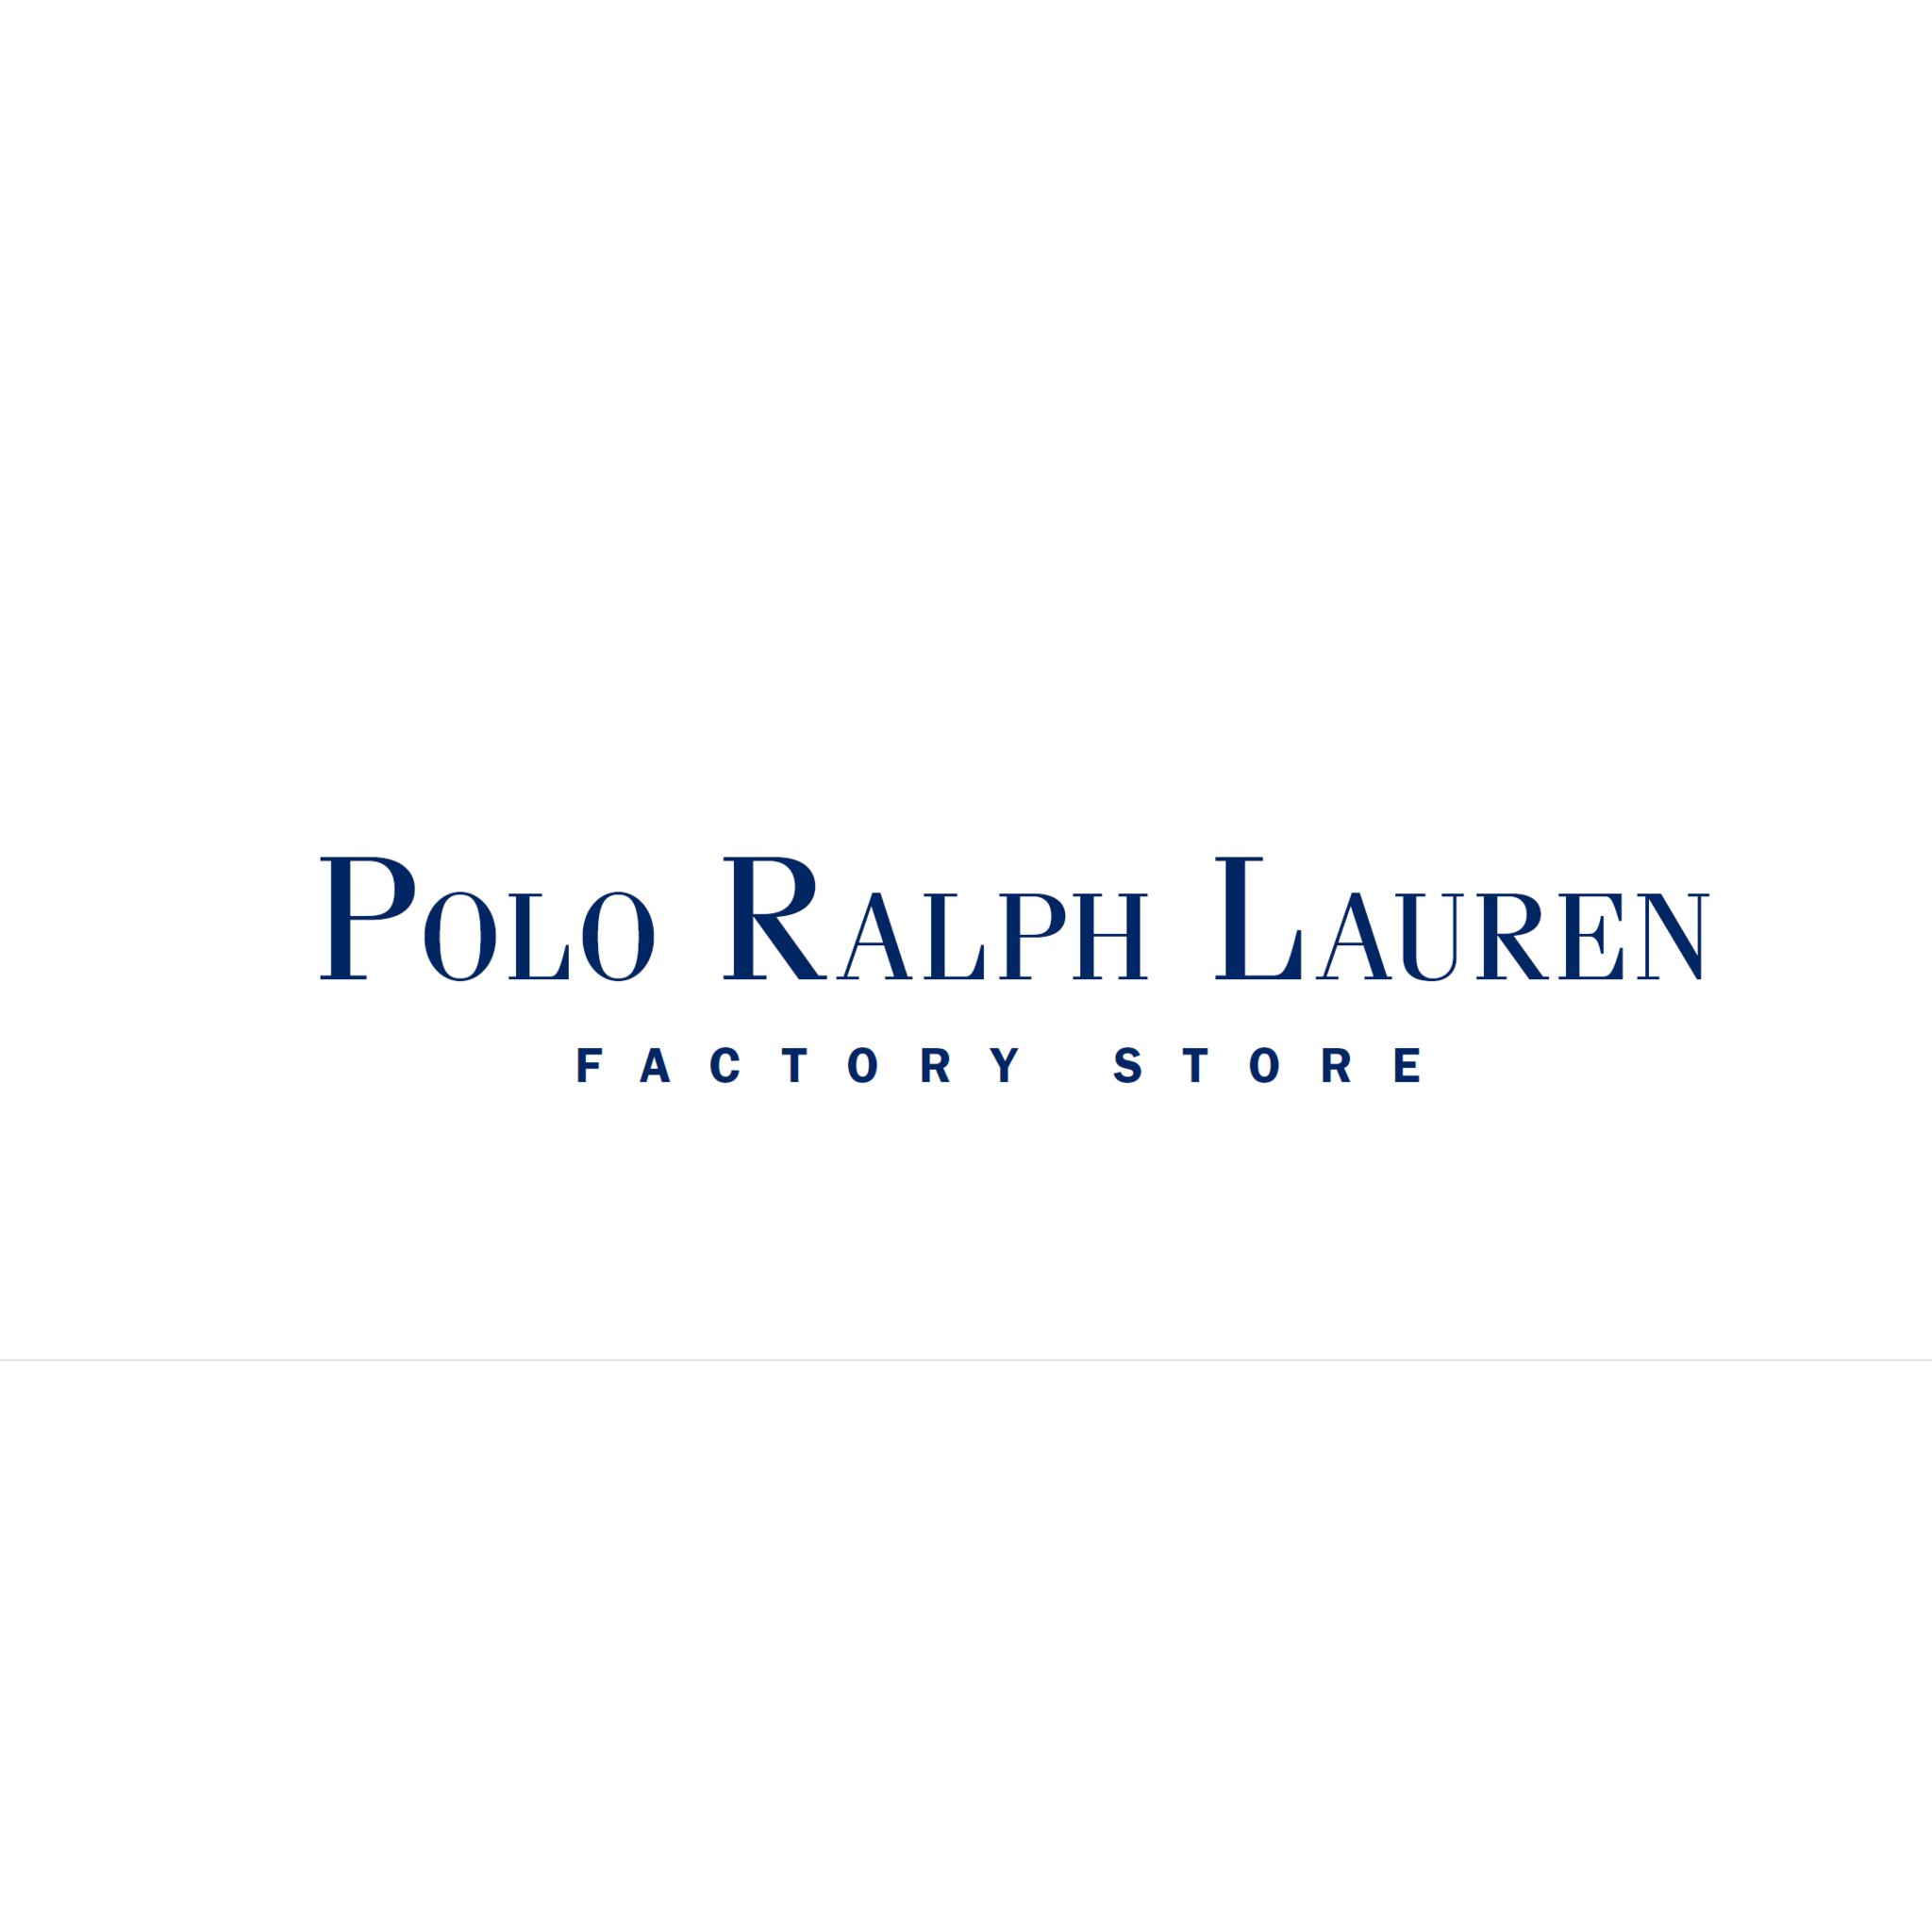 Polo Ralph Lauren Factory Store - Grossistes et fabricants de vêtements